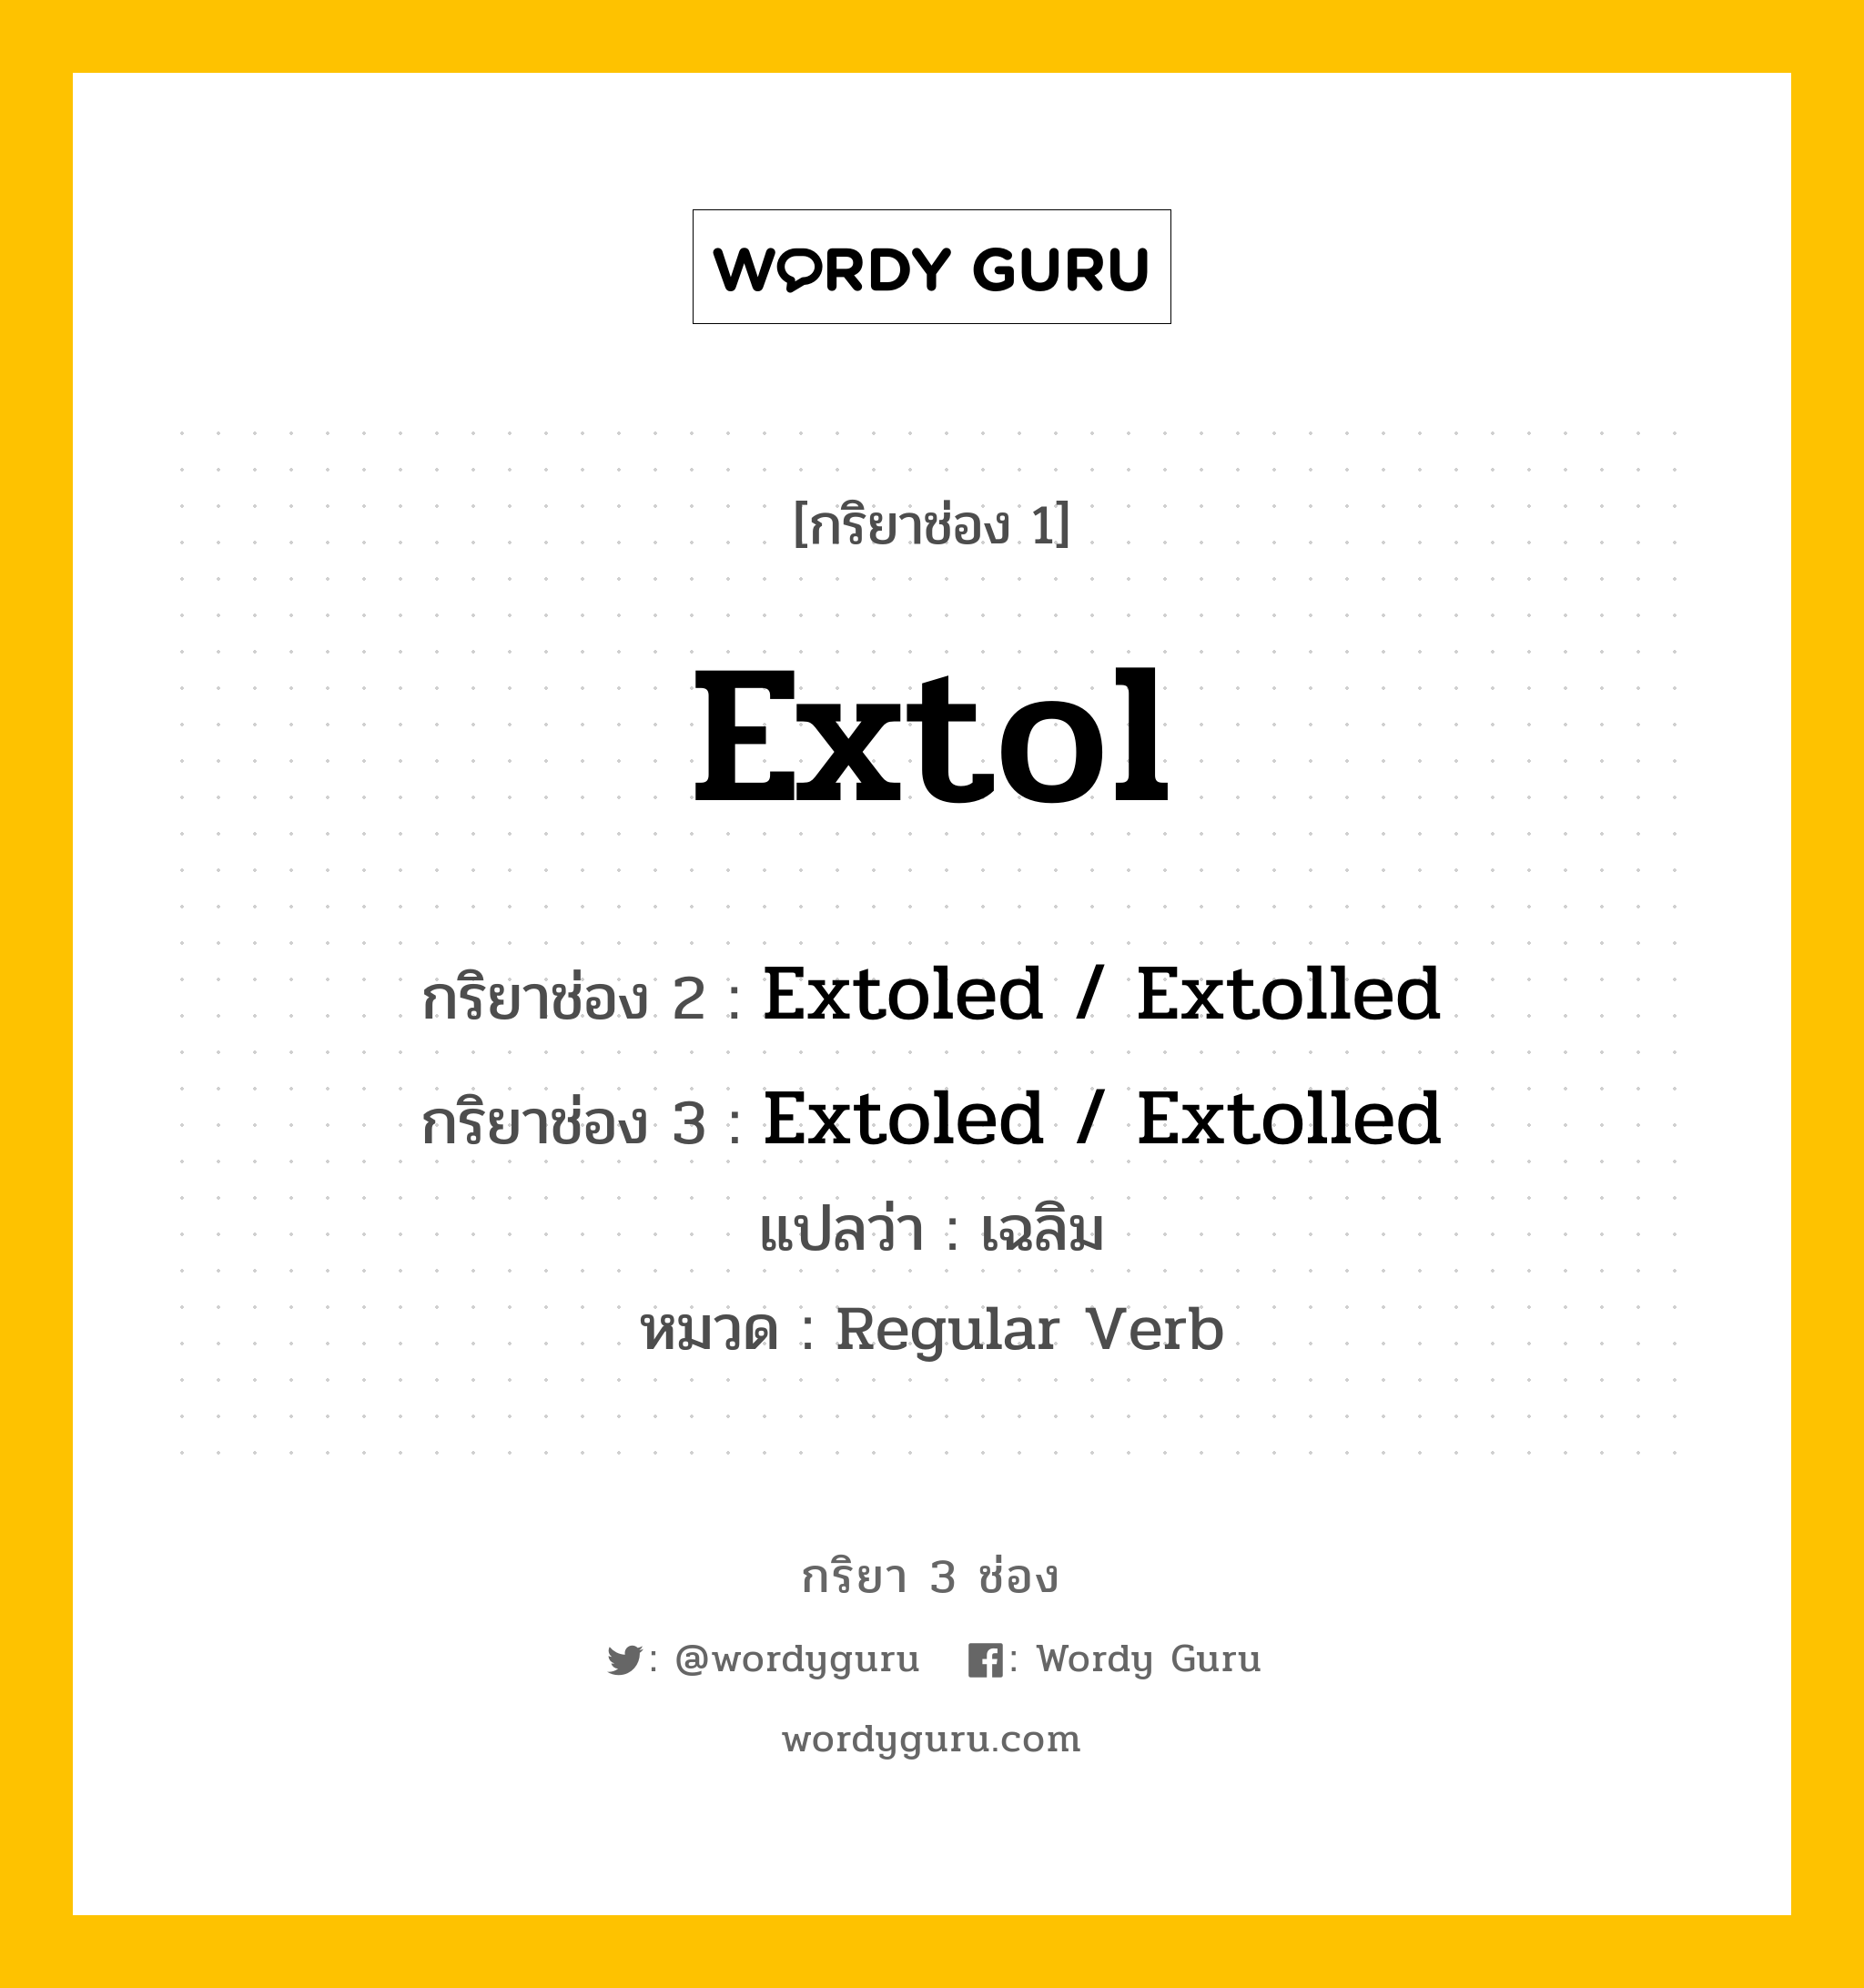 กริยา 3 ช่อง ของ Extol คืออะไร? มาดูคำอ่าน คำแปลกันเลย, กริยาช่อง 1 Extol กริยาช่อง 2 Extoled / Extolled กริยาช่อง 3 Extoled / Extolled แปลว่า เฉลิม หมวด Regular Verb หมวด Regular Verb